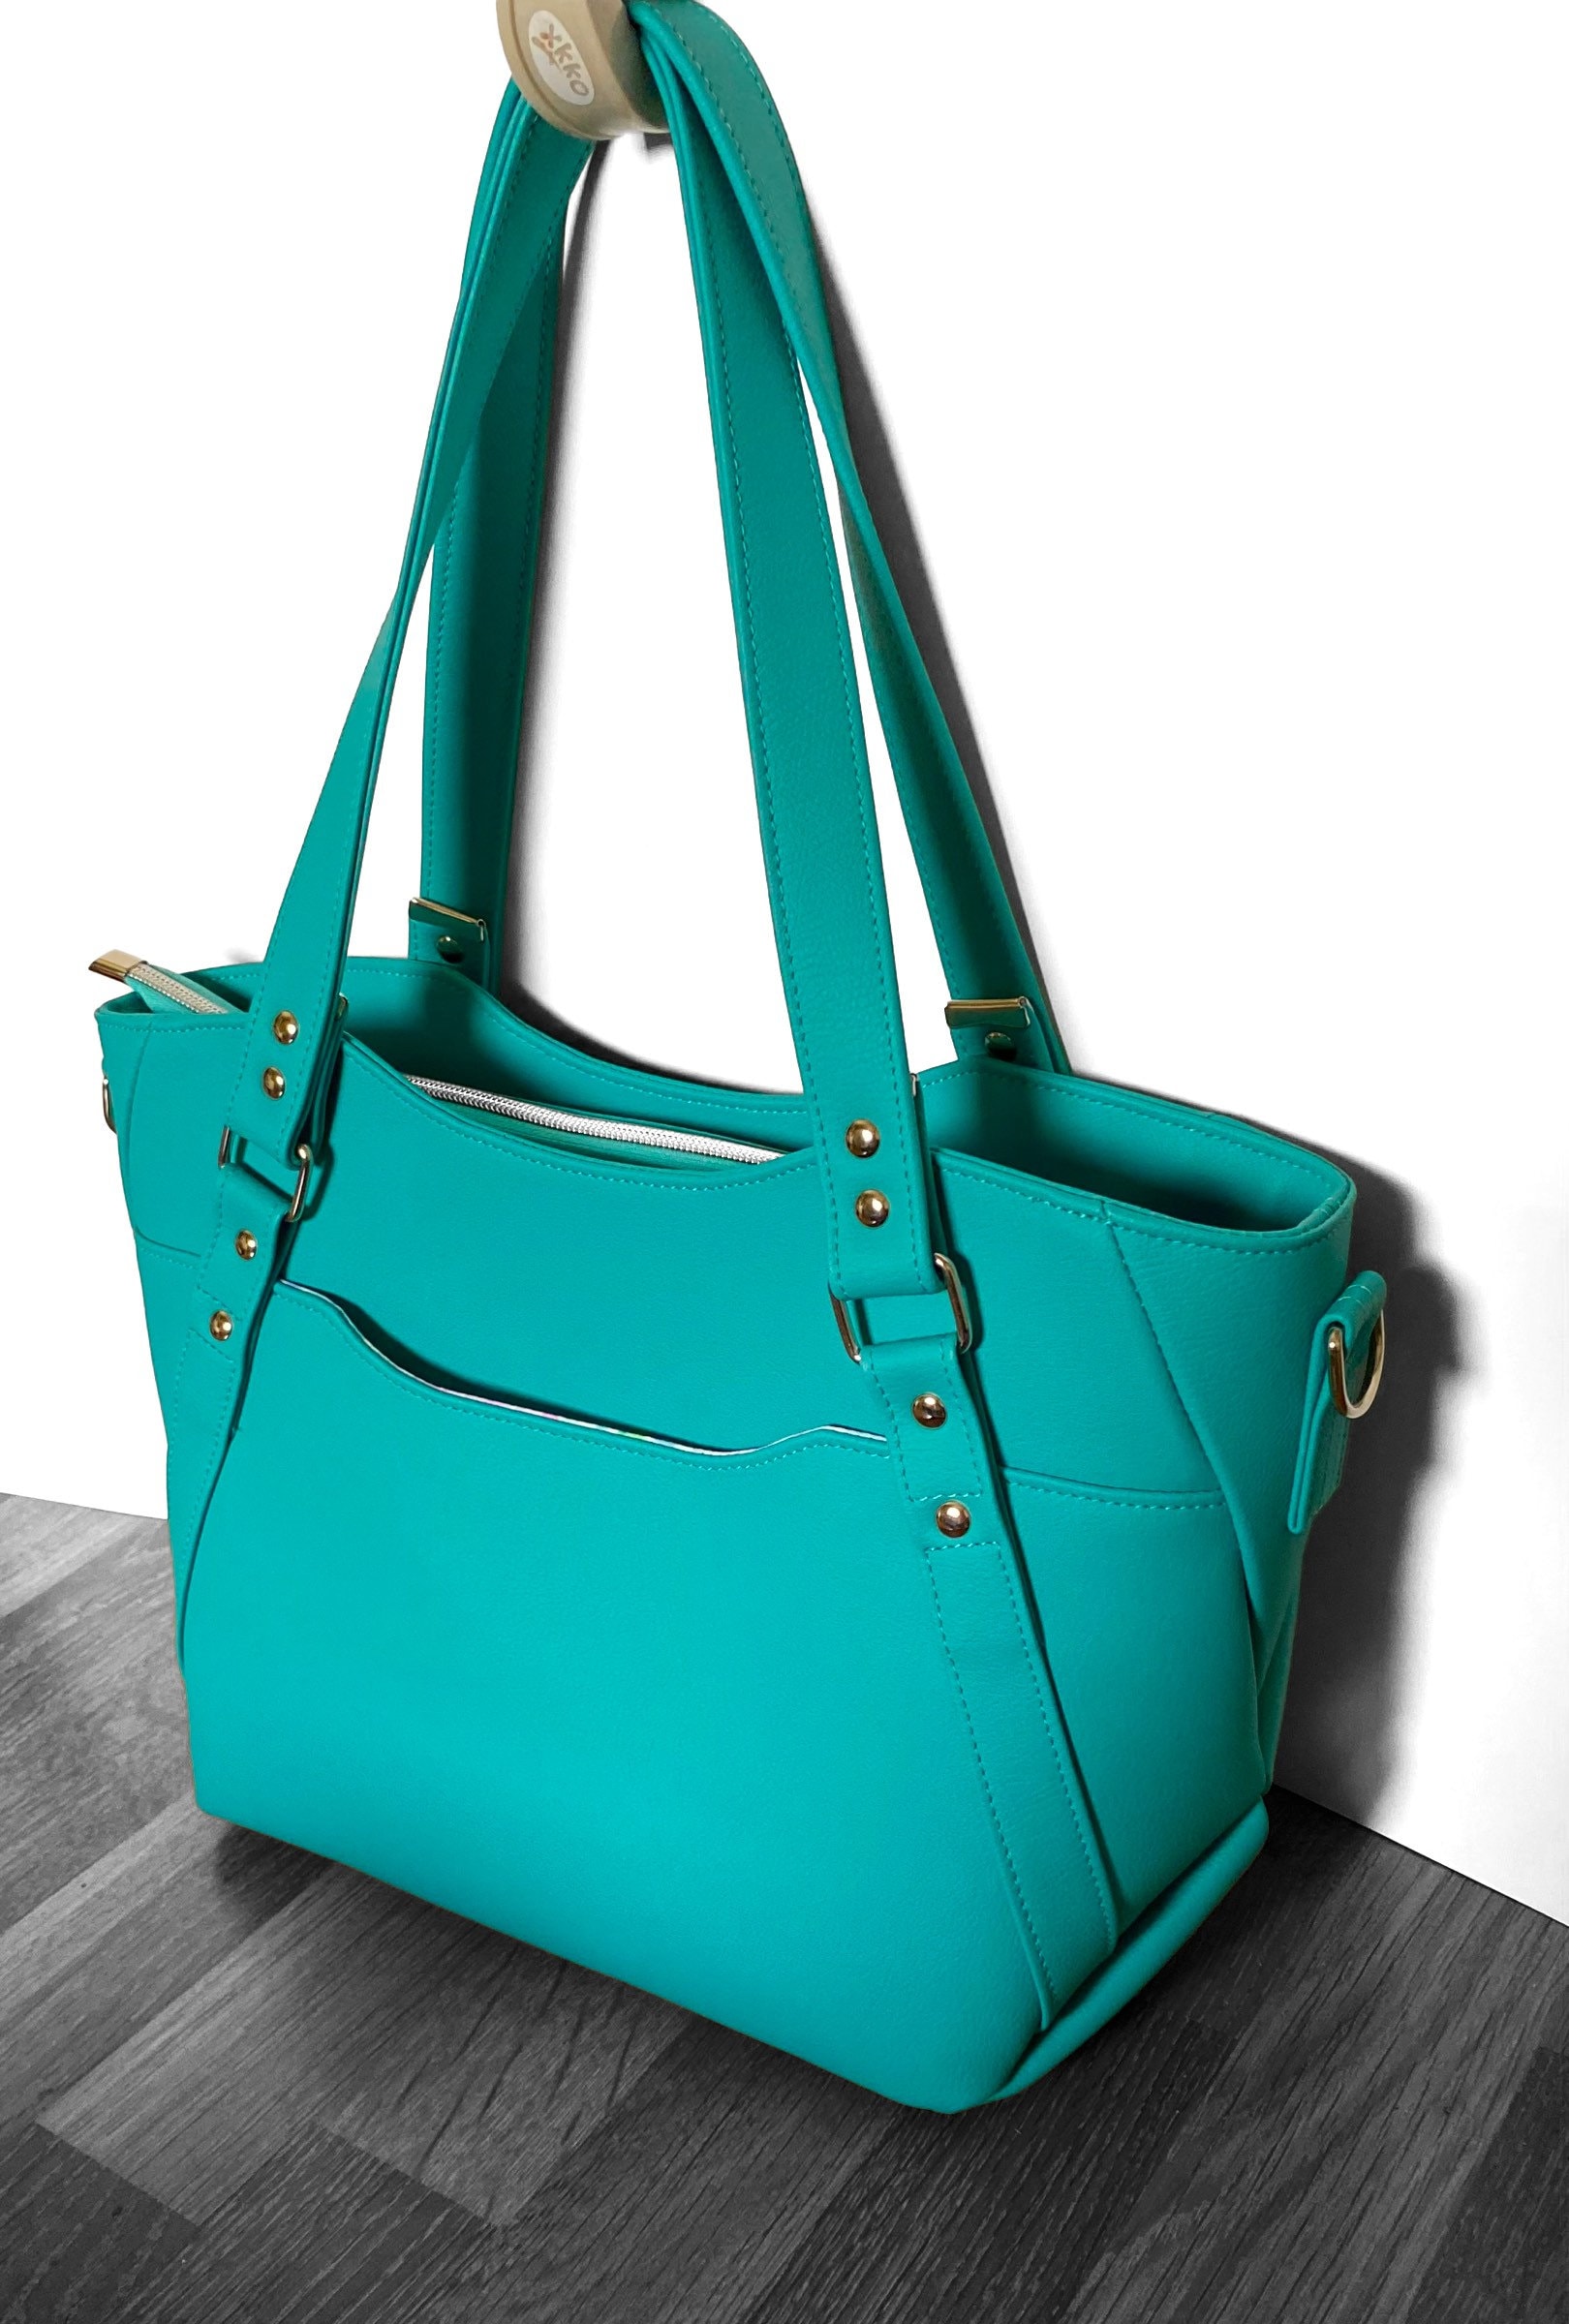 Vegan handbag, turquoise - teal tote, work bag, business bag, shoulder bag,  faux leather handbag, vinyl satchel, purse, ready to ship